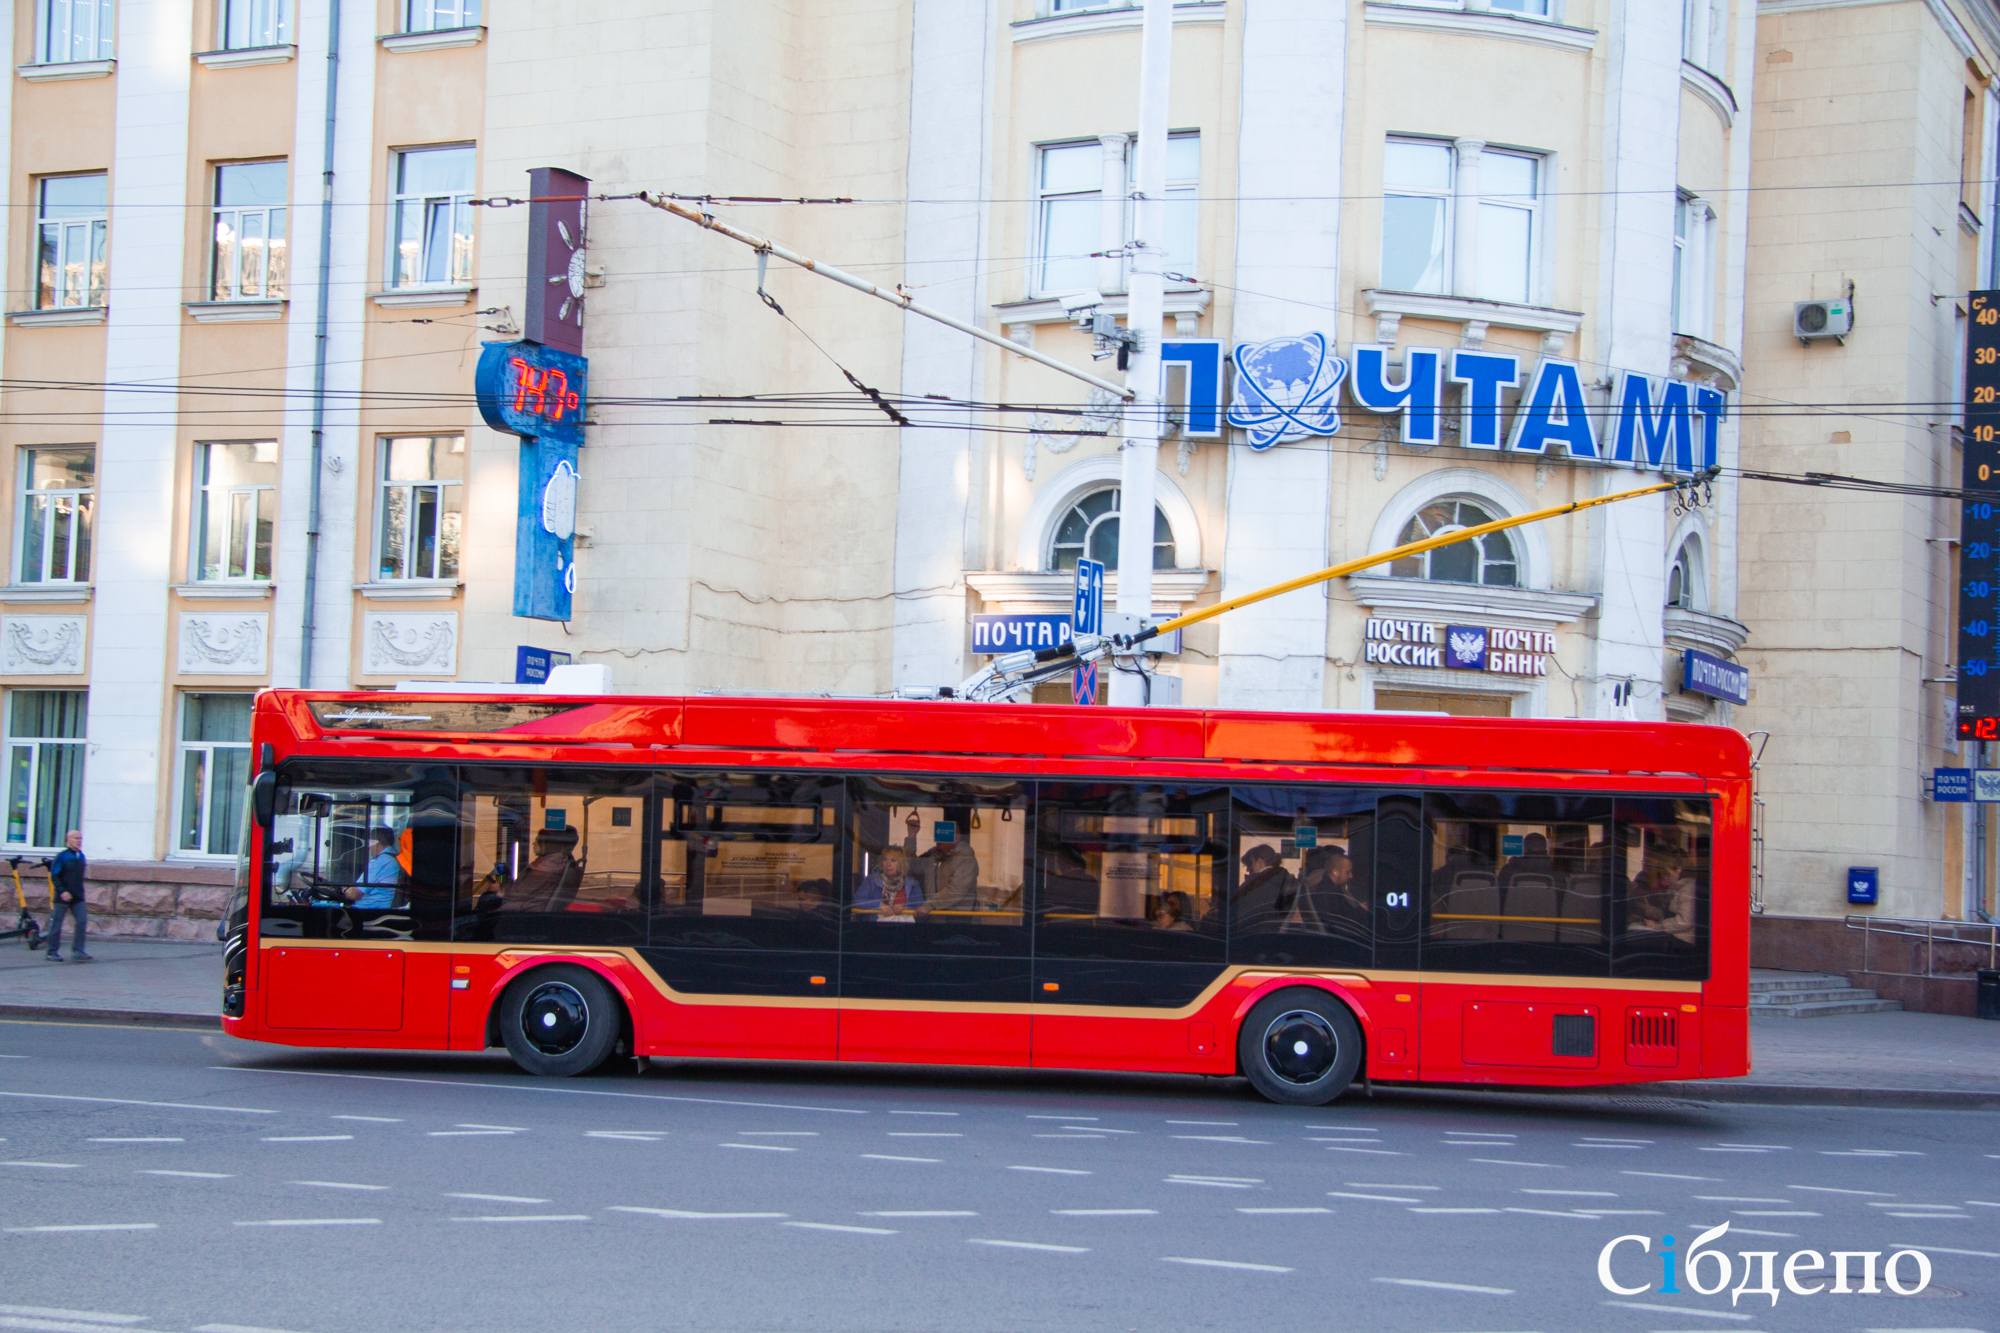 Странные звуки насторожили пассажиров общественного транспорта в Кемерове